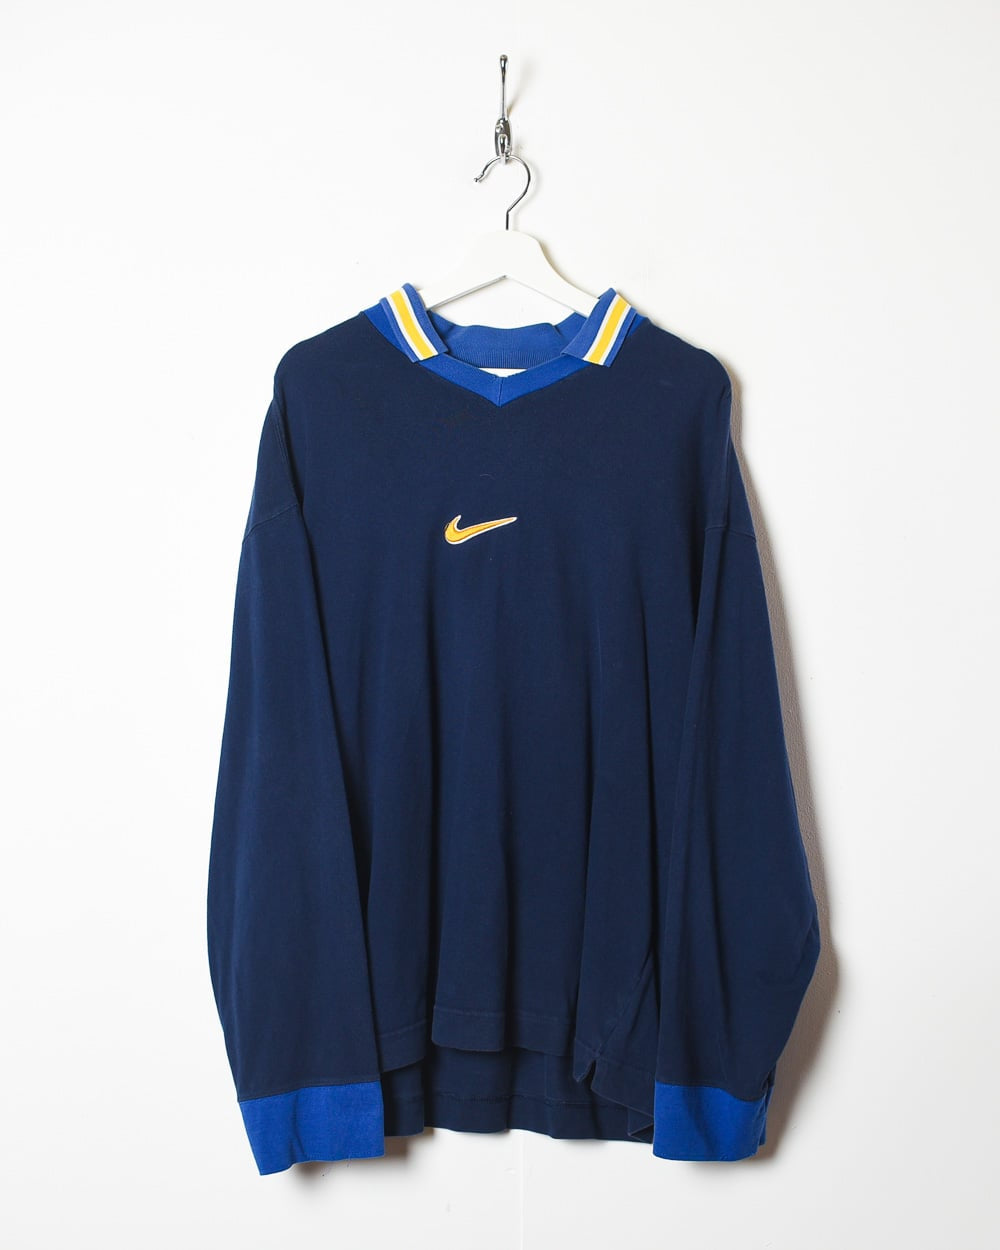 Navy Nike Collared Sweatshirt - Large